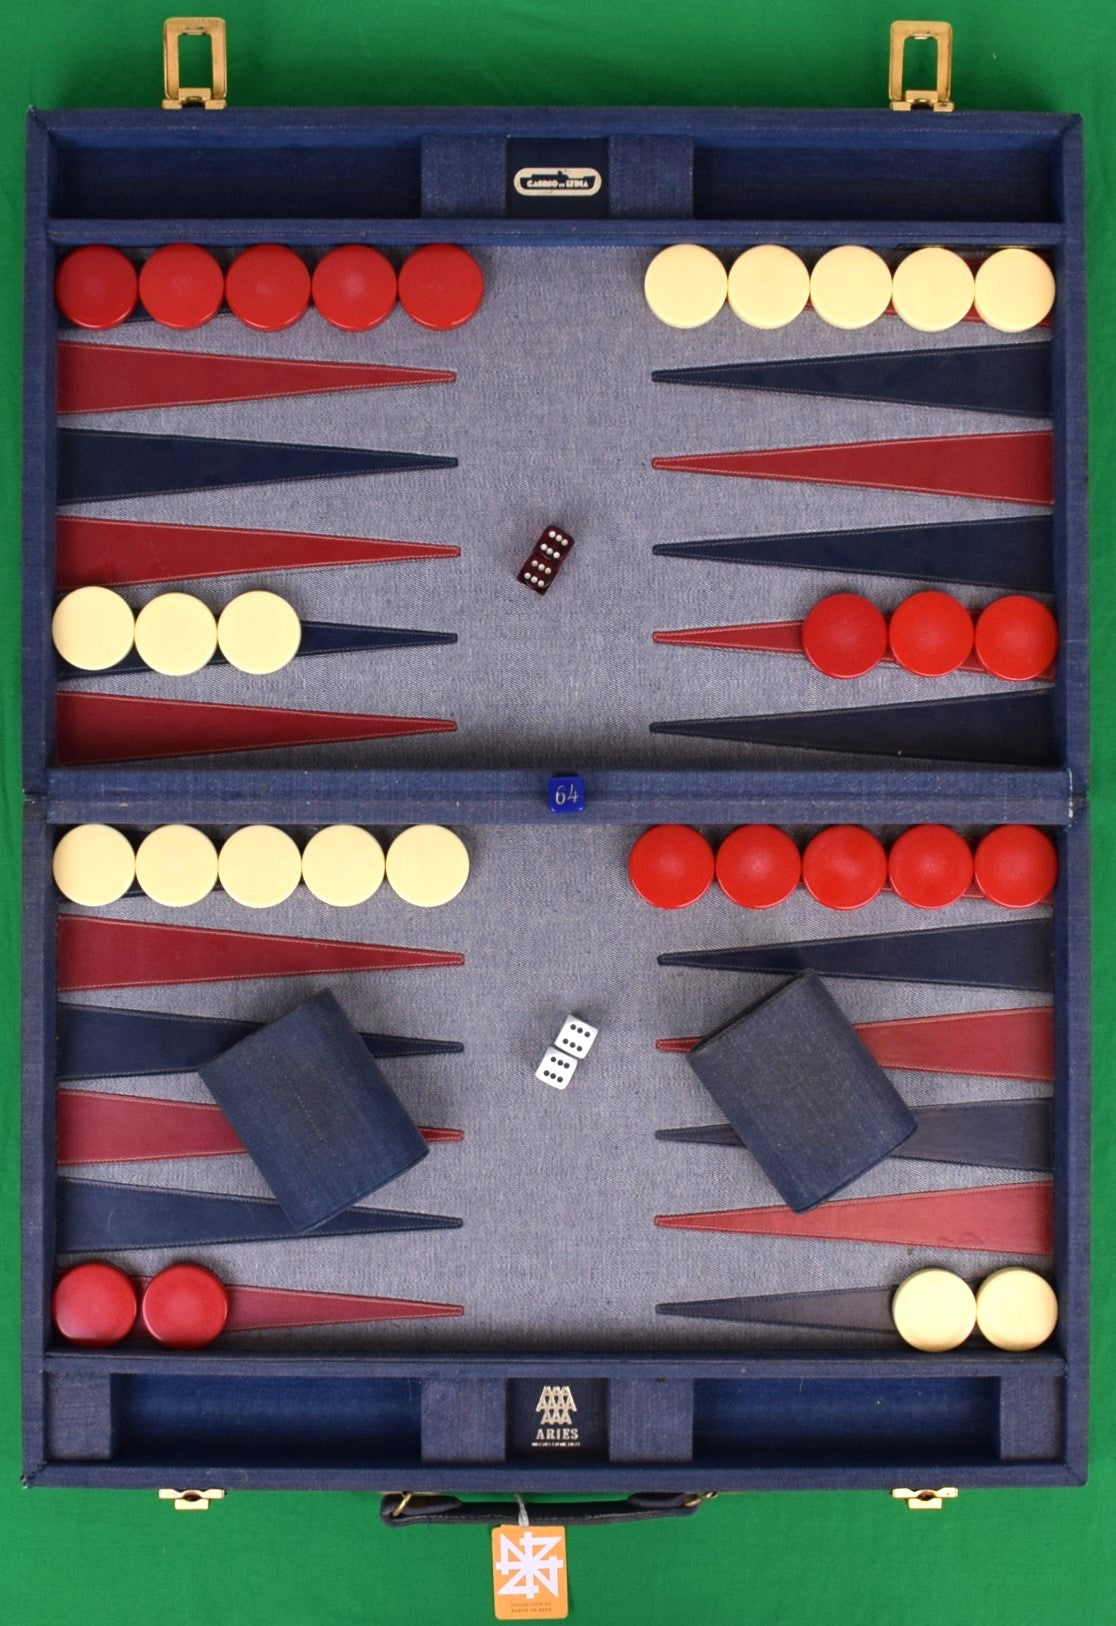 "The Baron de Rede's Aries Denim Backgammon Attache Case"